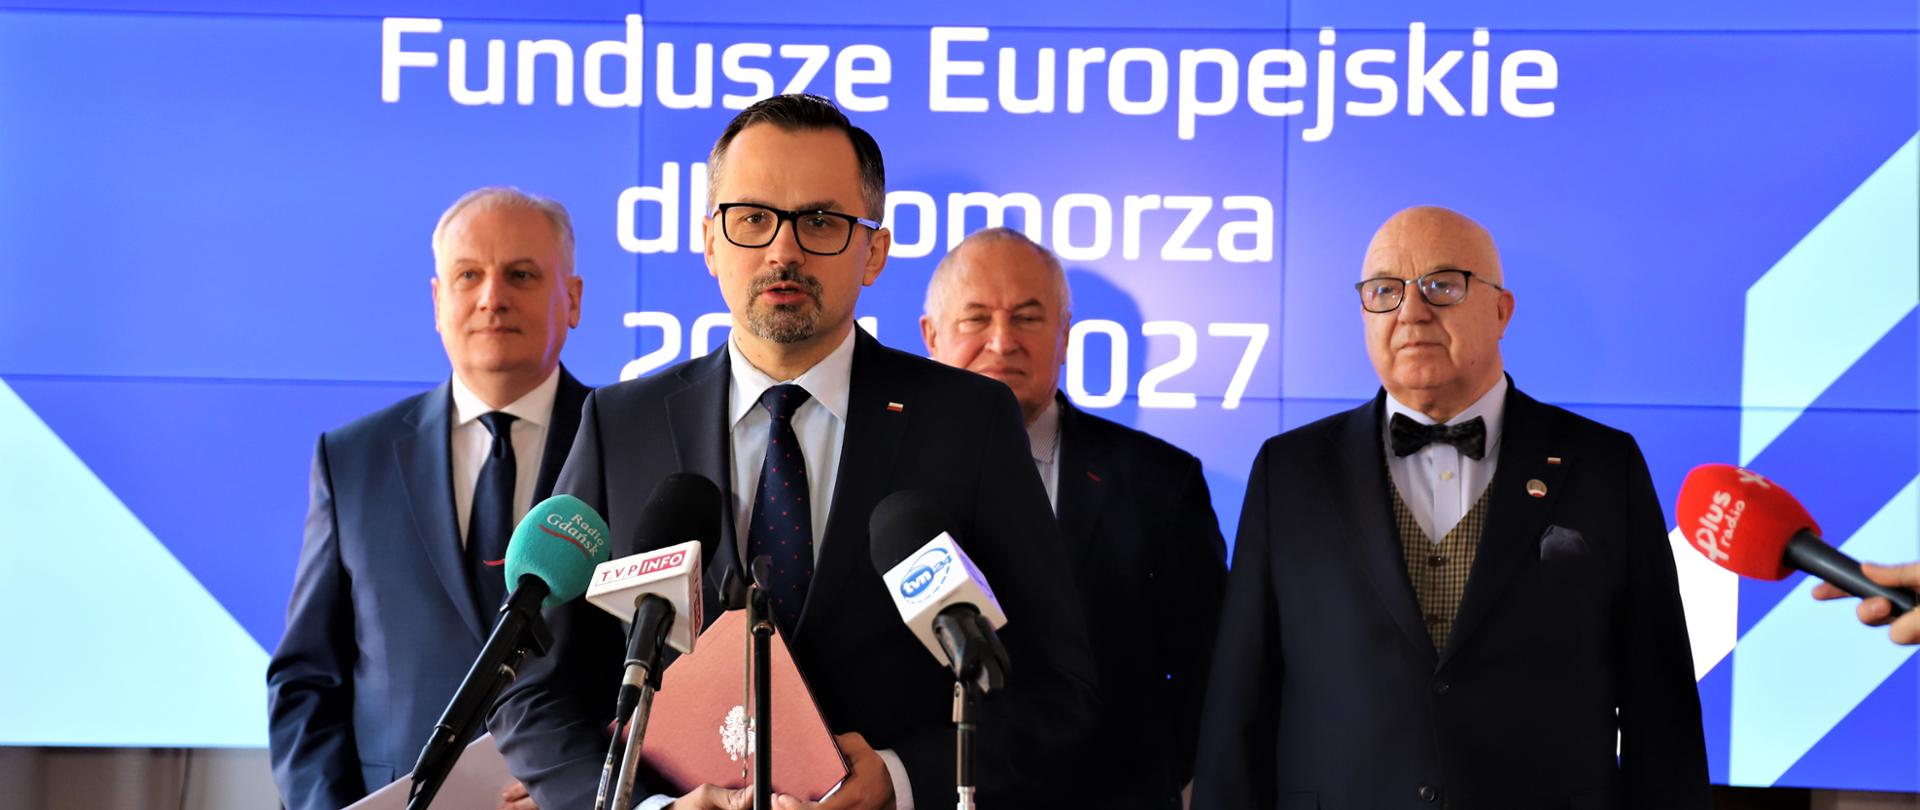 Wiceminister Marcin Horała stoi przed mikrofonem. Za jego plecami stoją trzy osoby.